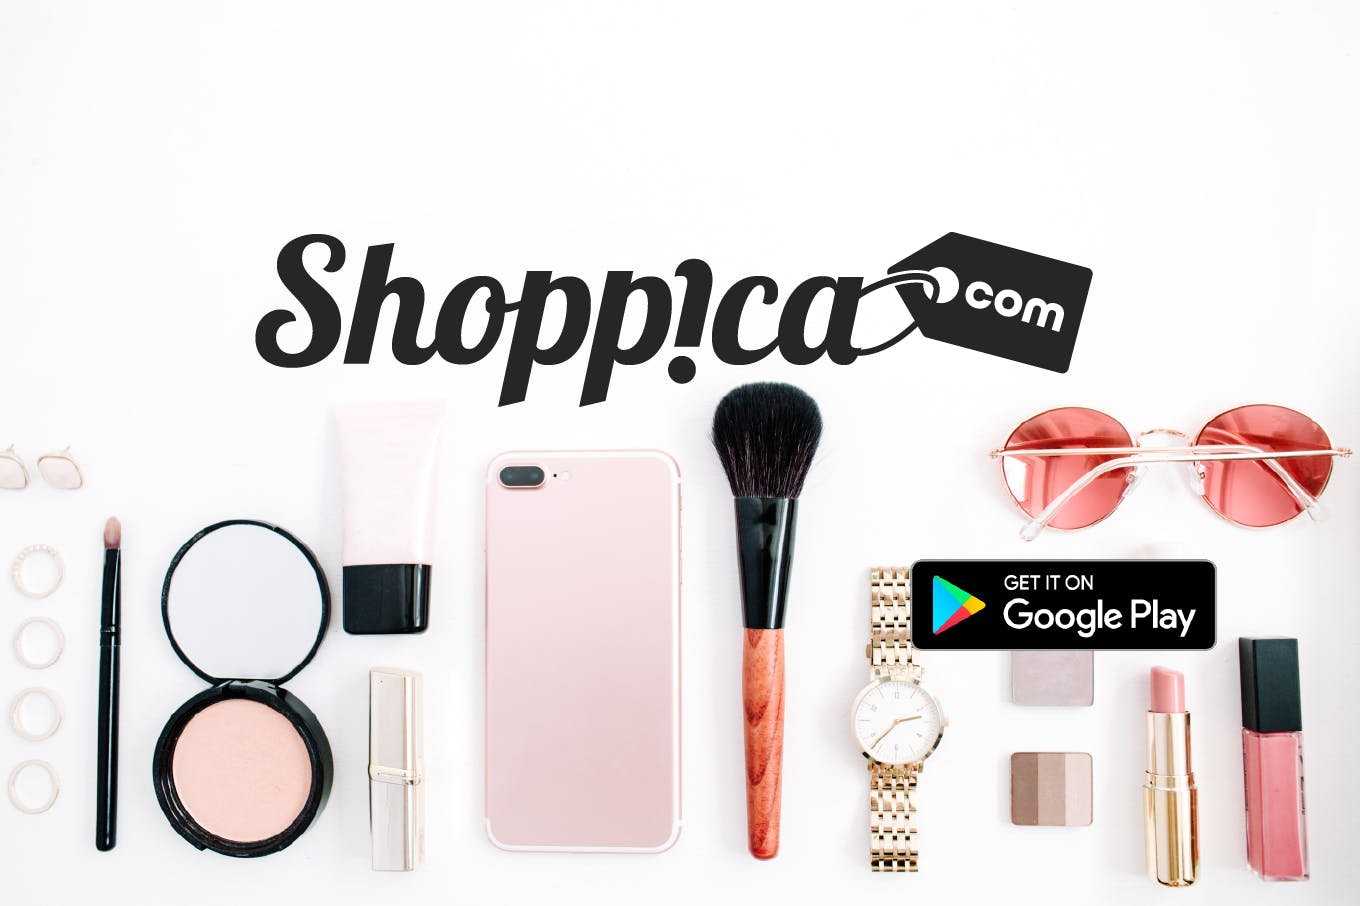 Shoppica.com media 2